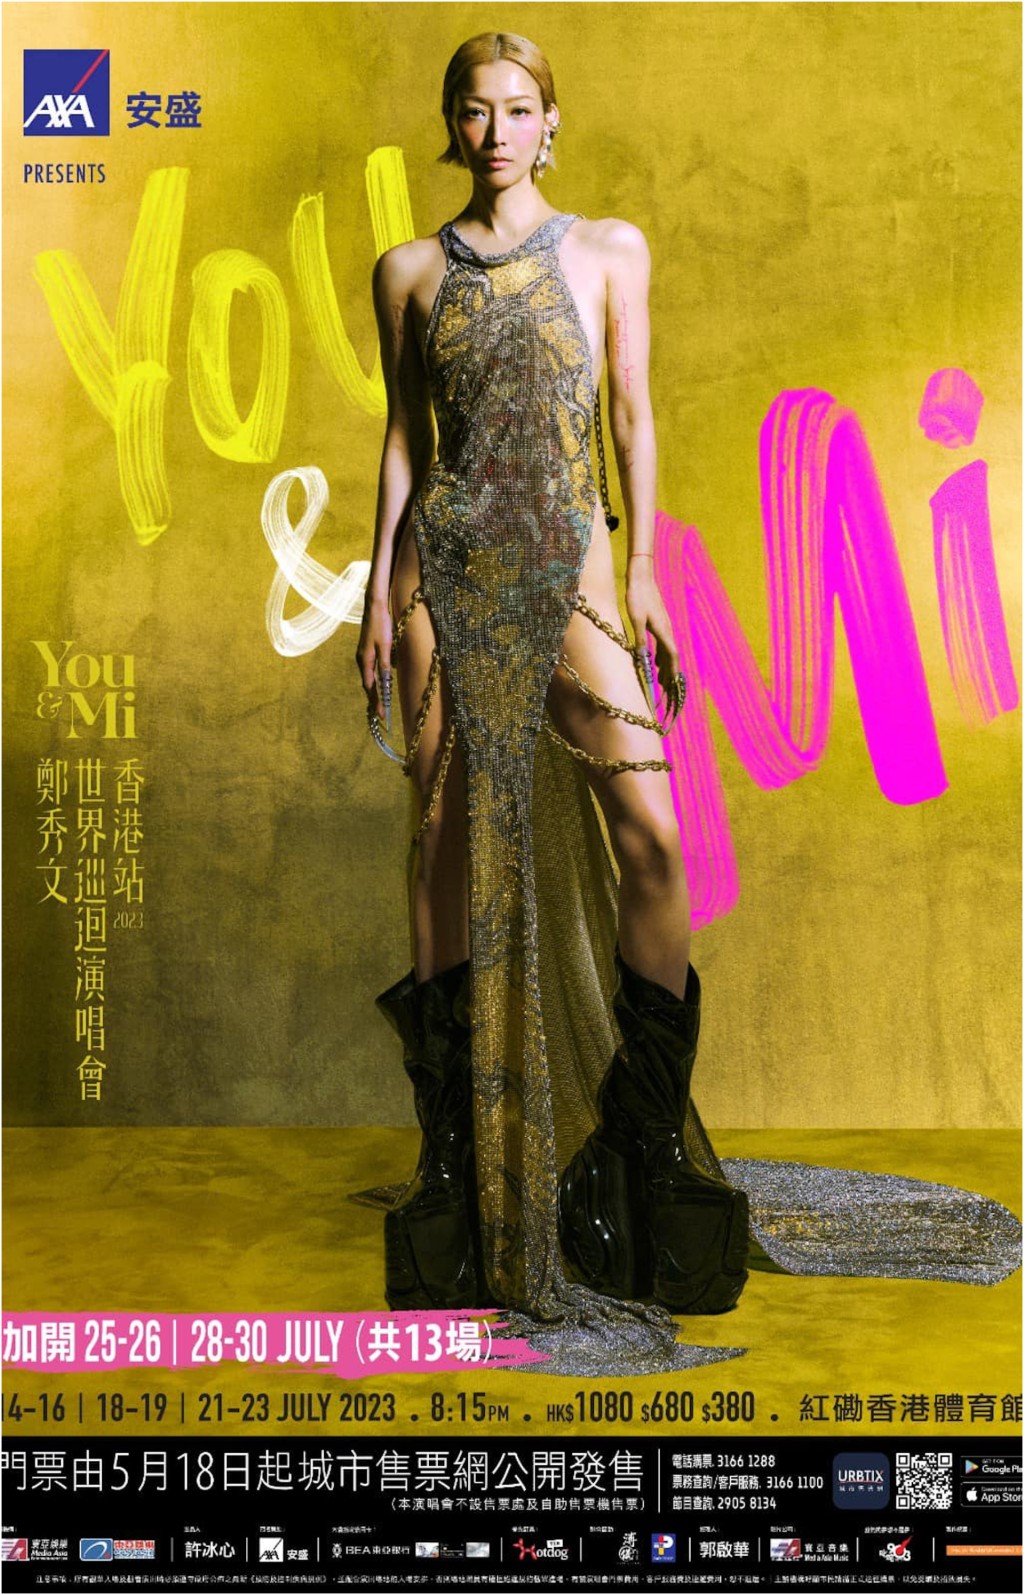 《You & Mi鄭秀文世界巡迴演唱會香港站2023》於今年7月舉行。